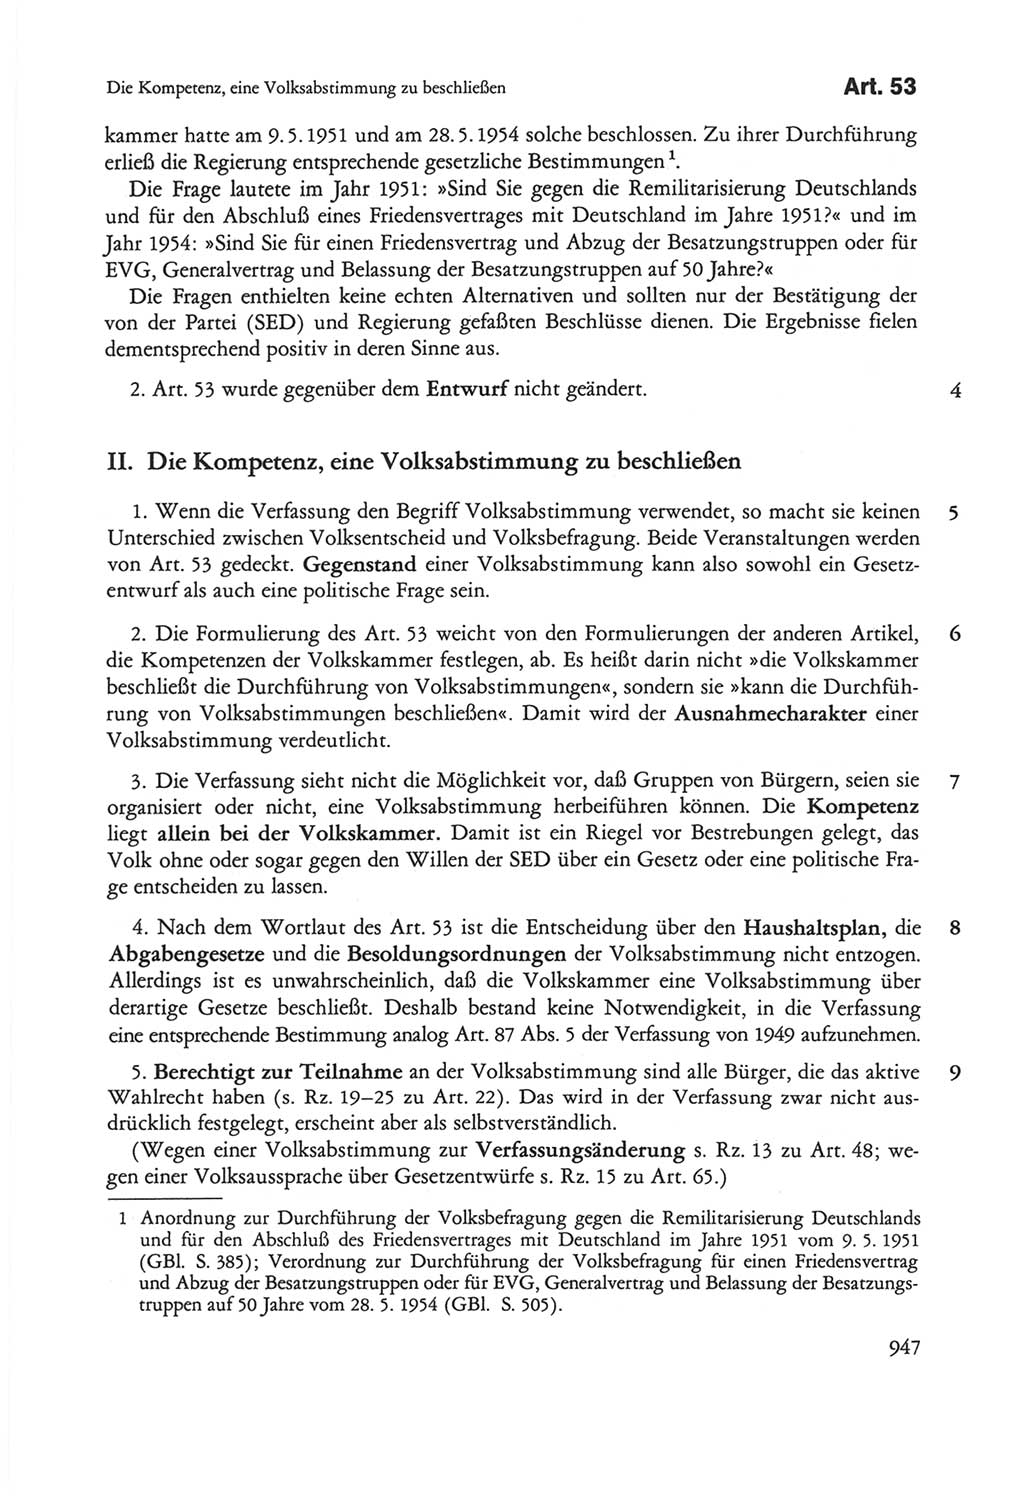 Die sozialistische Verfassung der Deutschen Demokratischen Republik (DDR), Kommentar mit einem Nachtrag 1997, Seite 947 (Soz. Verf. DDR Komm. Nachtr. 1997, S. 947)